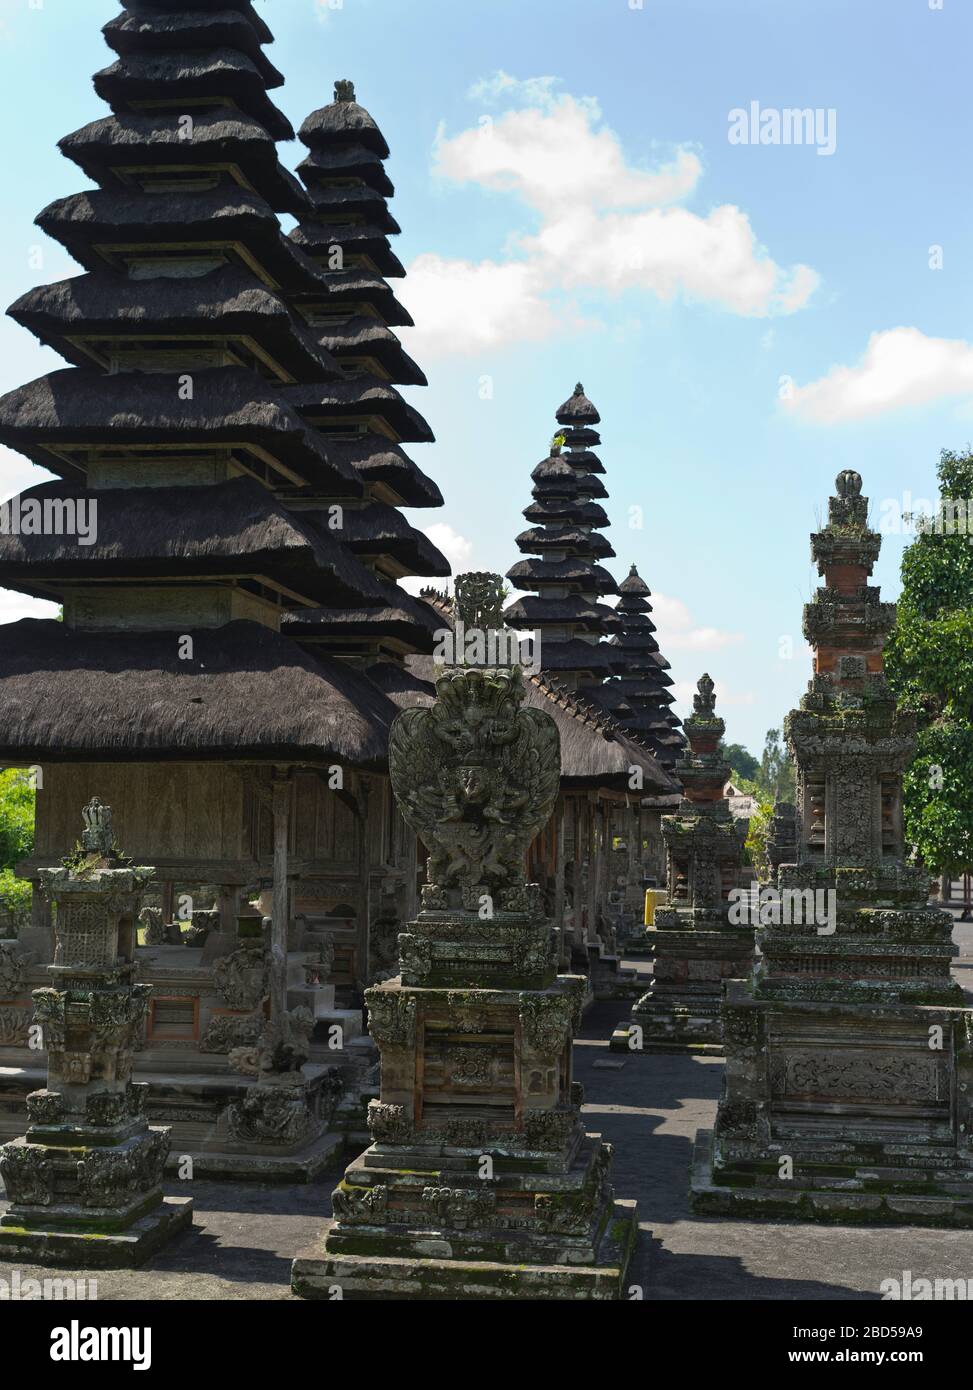 dh Pura Taman Ayun Königlicher Tempel BALI INDONESIEN Garuda-Schrein Skulptur Balinese Hindu Mengwi innere sanctum Schreine Religion pelinggih meru Türme Stockfoto